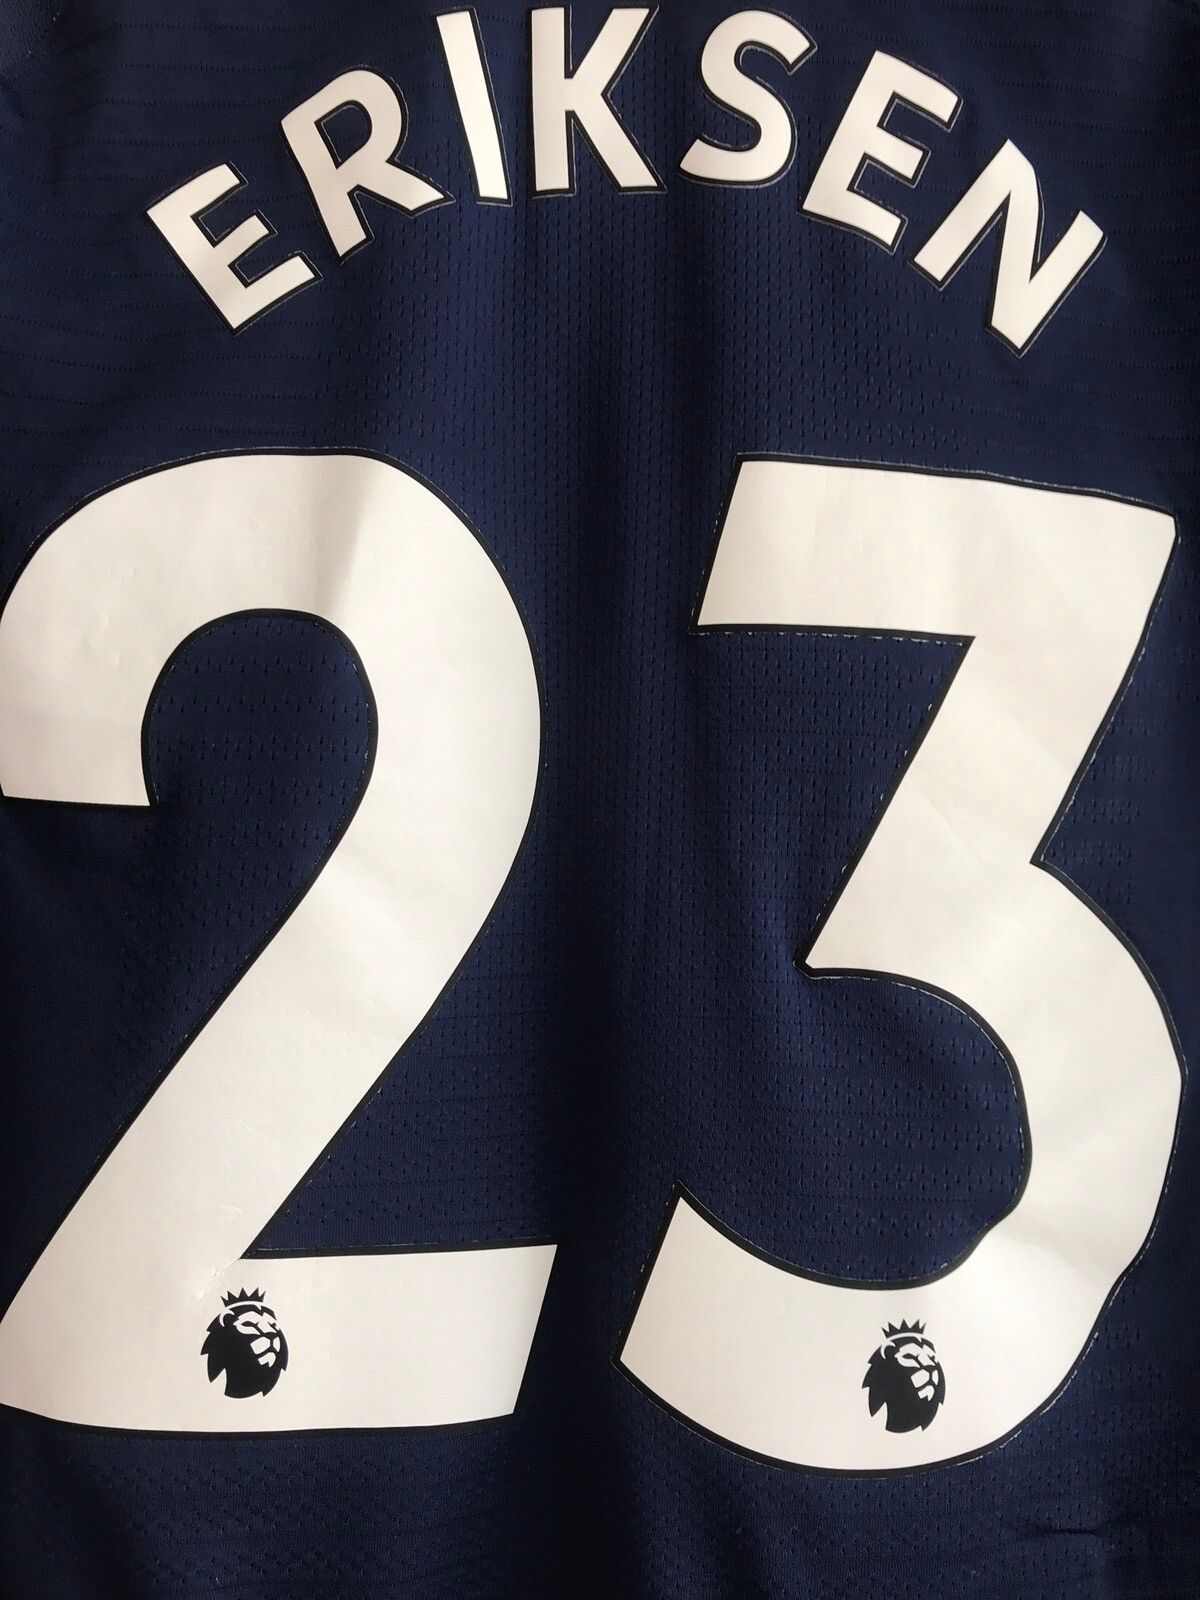 Nike Tottenham 2019-2020 Eriksen Nike Vaporknit Soccer Jersey Kit Size US L / EU 52-54 / 3 - 5 Thumbnail